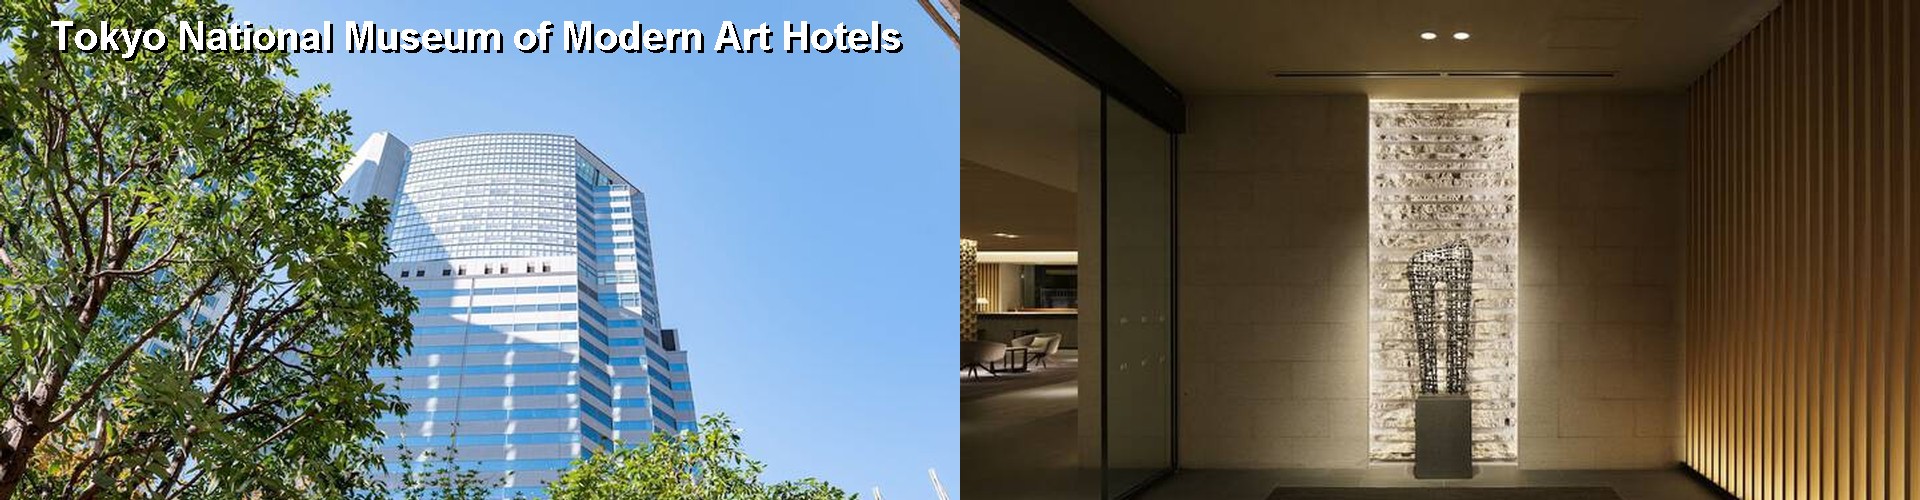 5 Best Hotels near Tokyo National Museum of Modern Art